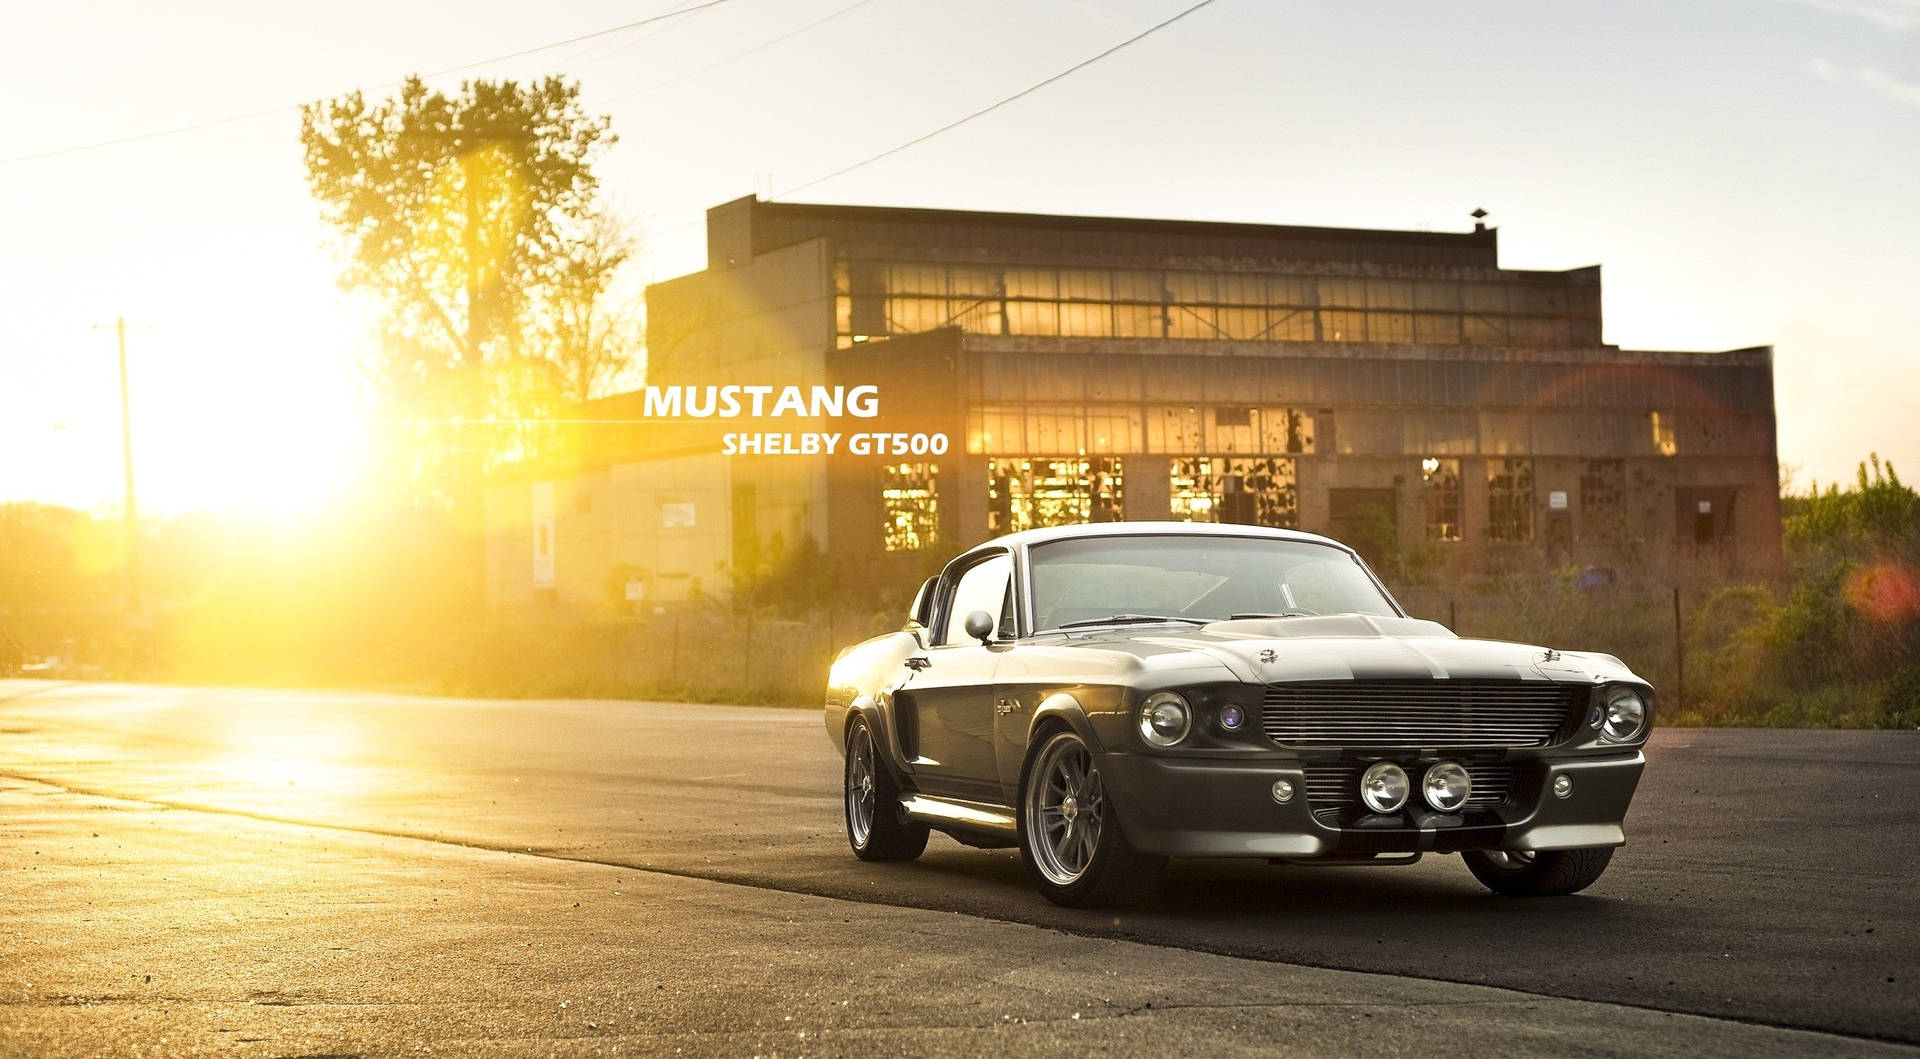 Enklassisk Mustang Är Parkerad Framför En Byggnad. Wallpaper